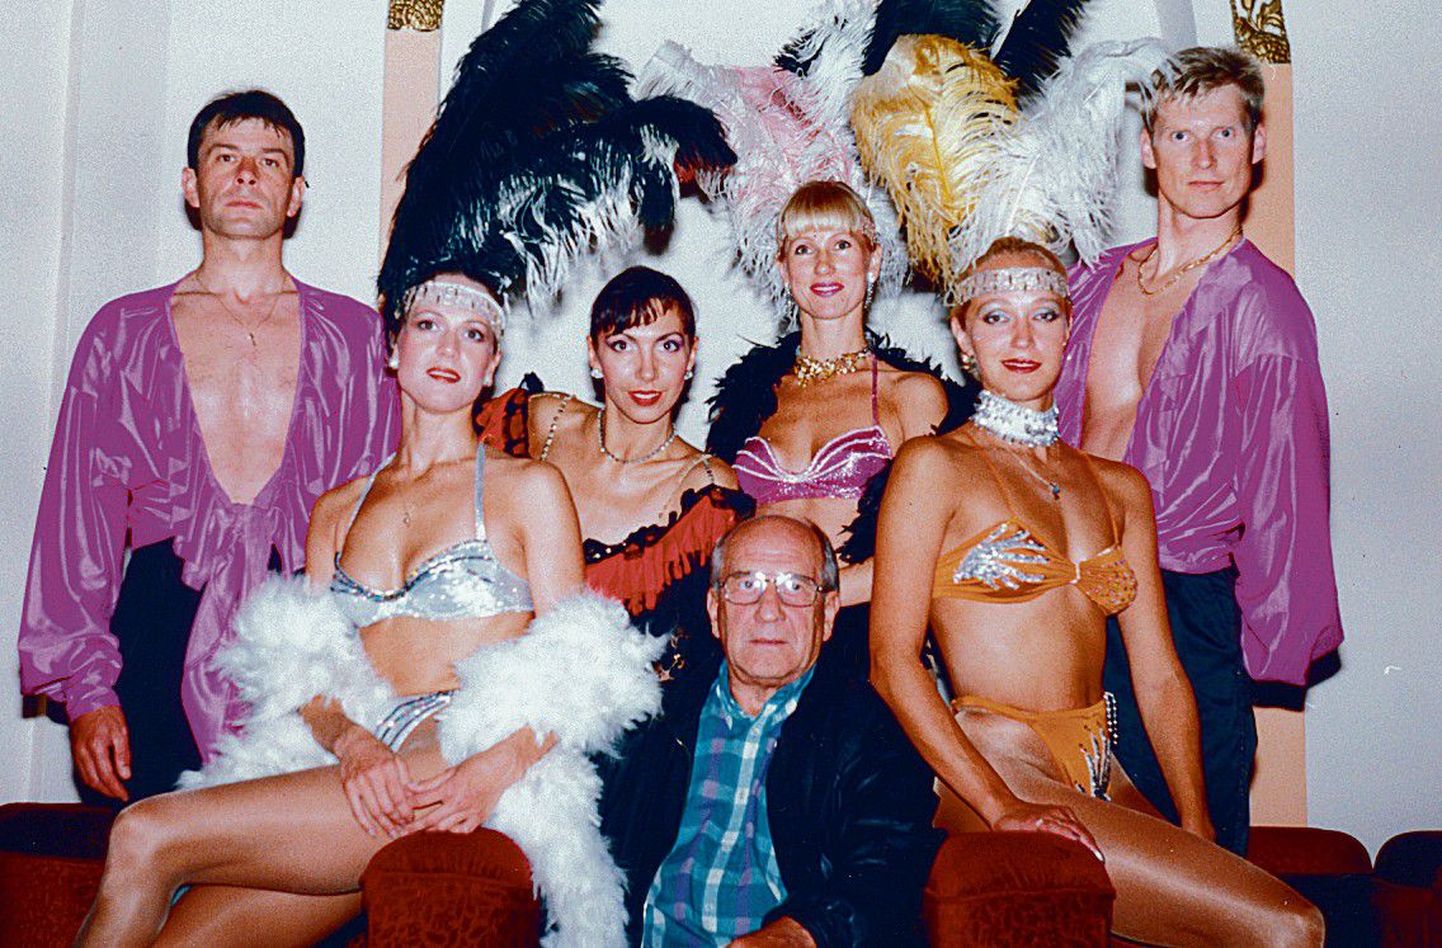 Elu sulgede ja glamuuri keskel: Kalju Saareke 1994. aastal Astoria restoranis koos oma tollase varieteetrupiga Golden Lady.